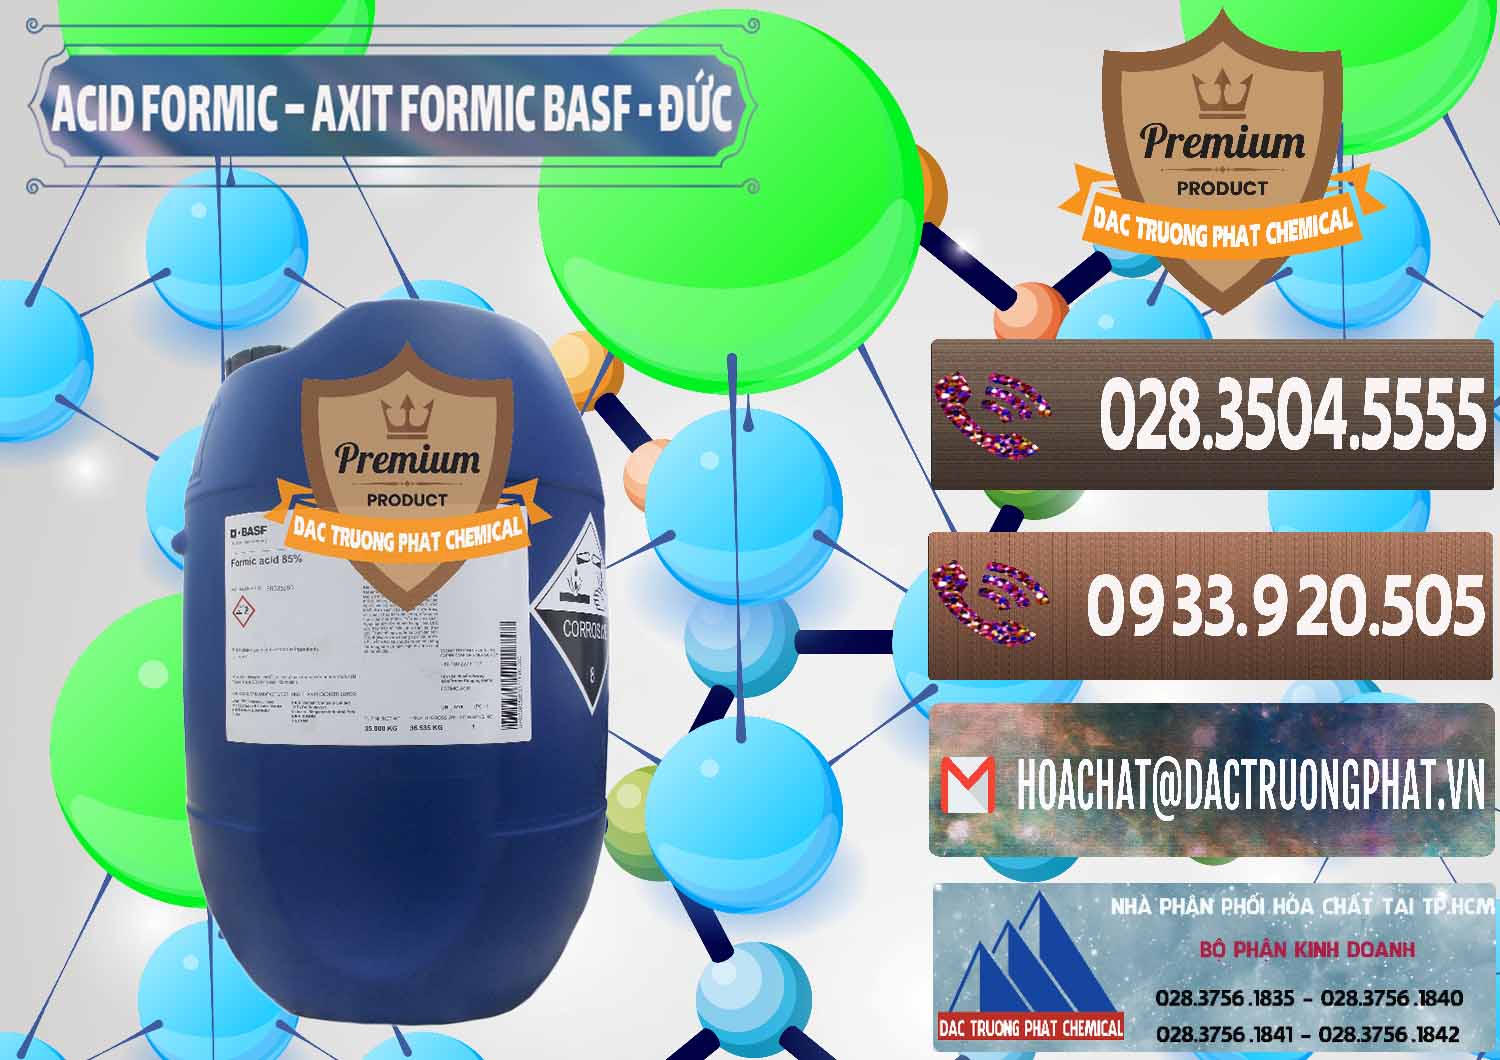 Nơi chuyên cung ứng và bán Acid Formic - Axit Formic BASF Đức Germany - 0028 - Chuyên bán và cung cấp hóa chất tại TP.HCM - hoachatviet.net